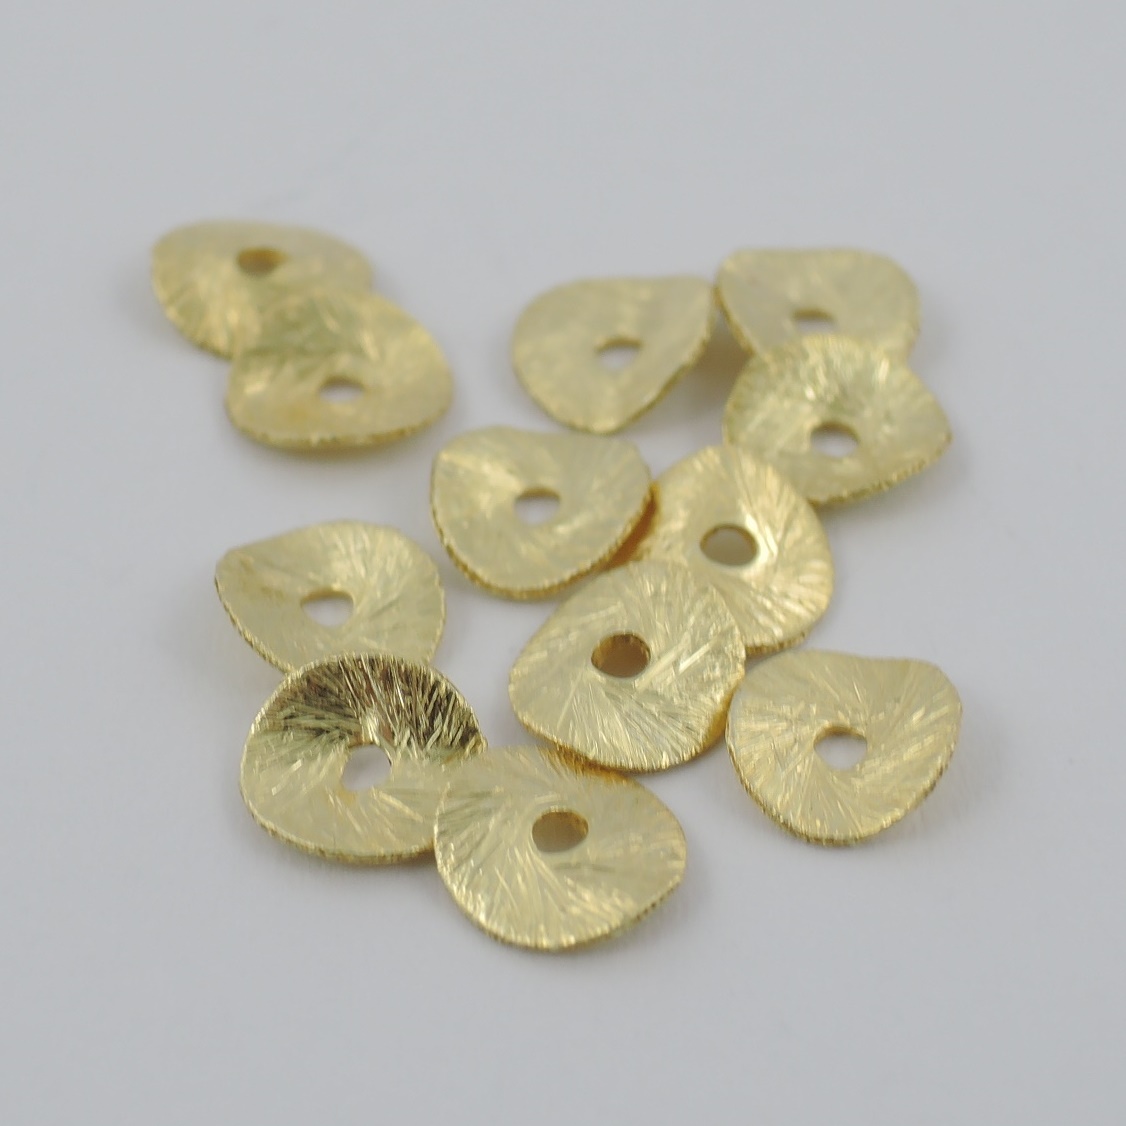 Scheibe Silber vergoldet 10 mm - Goldgottlieb